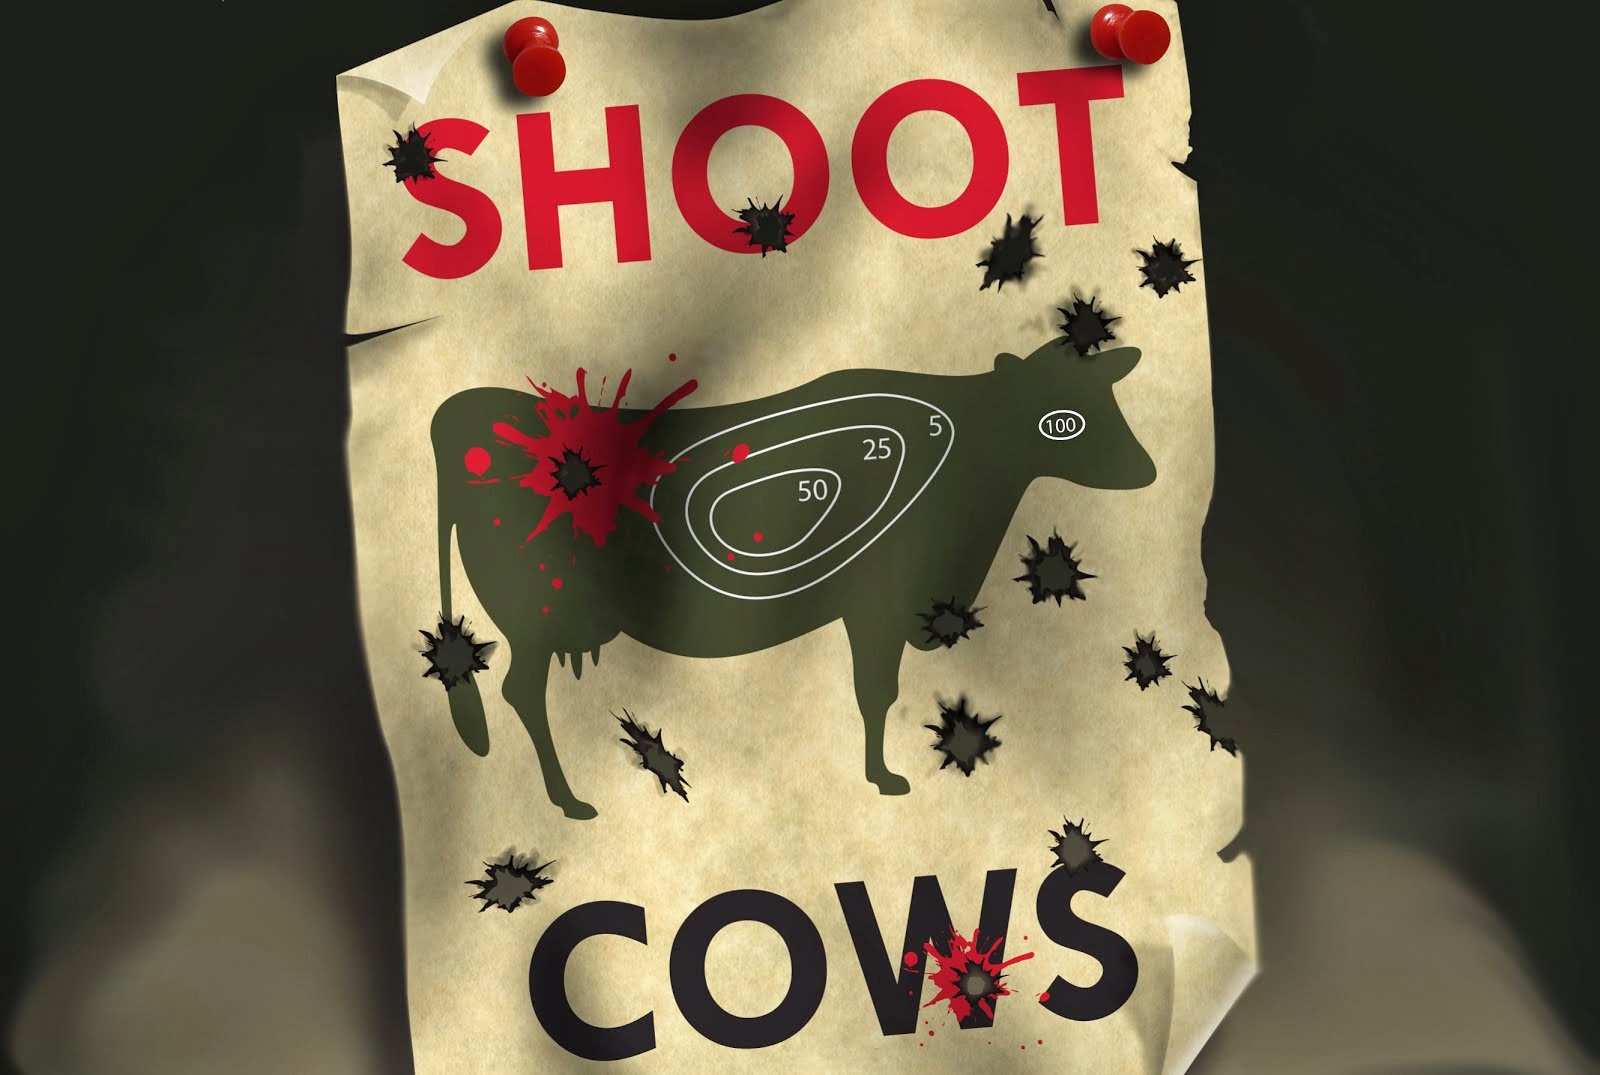 SHOOT COWS